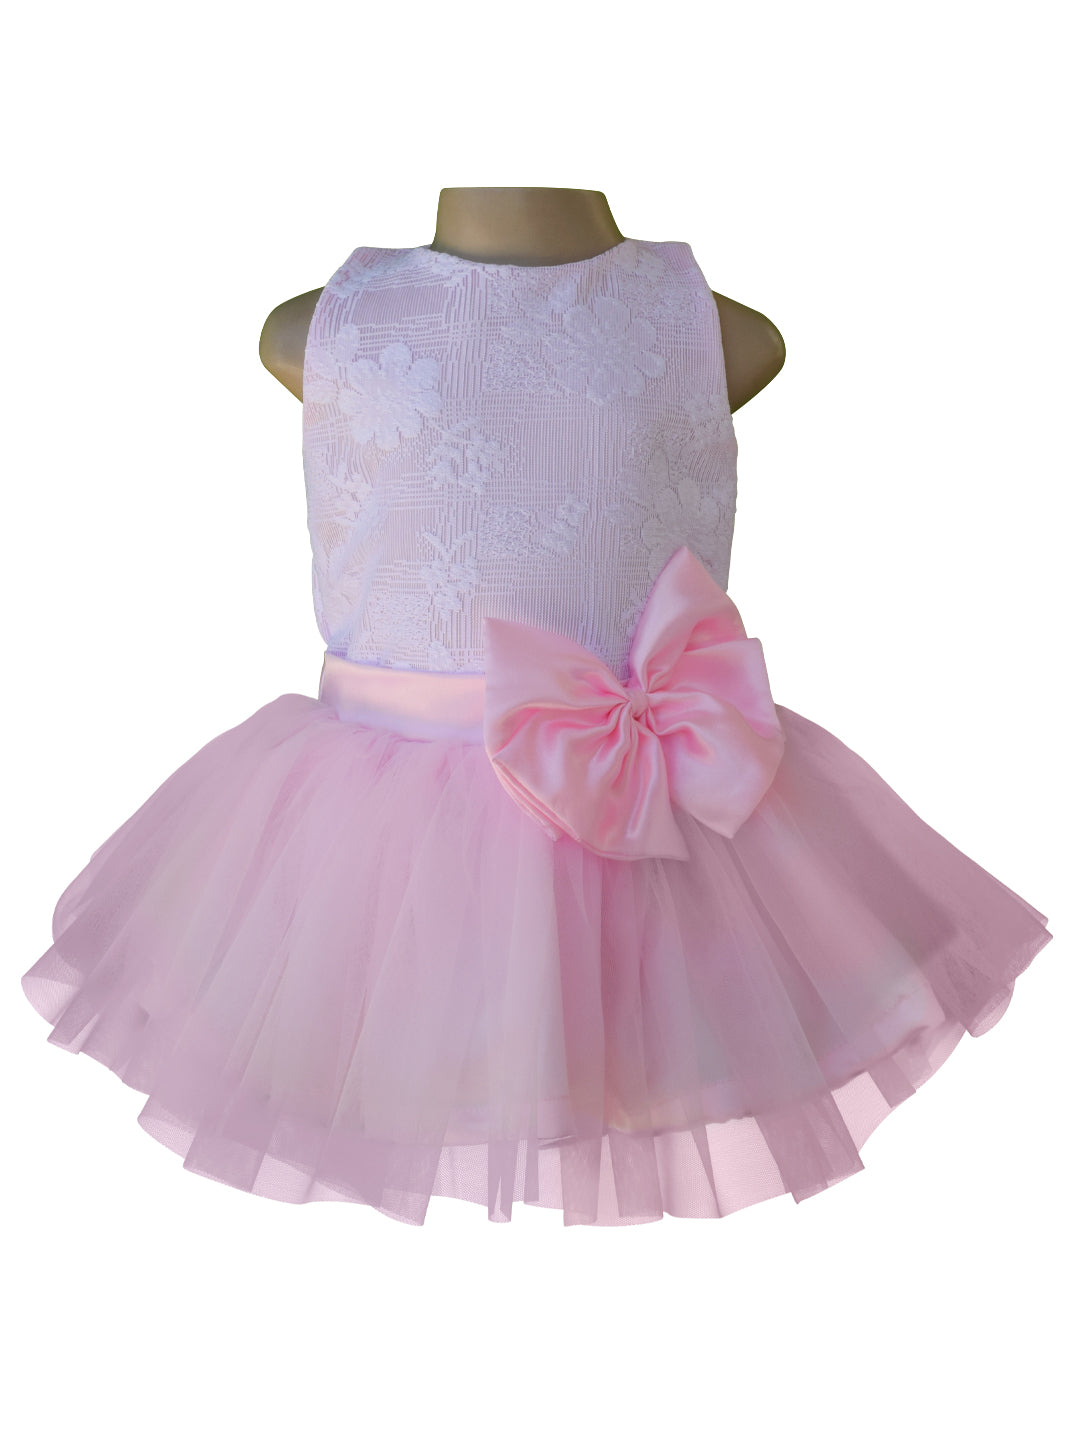 Dress for girl_Faye White Lace Pink Net Tutu Dress 